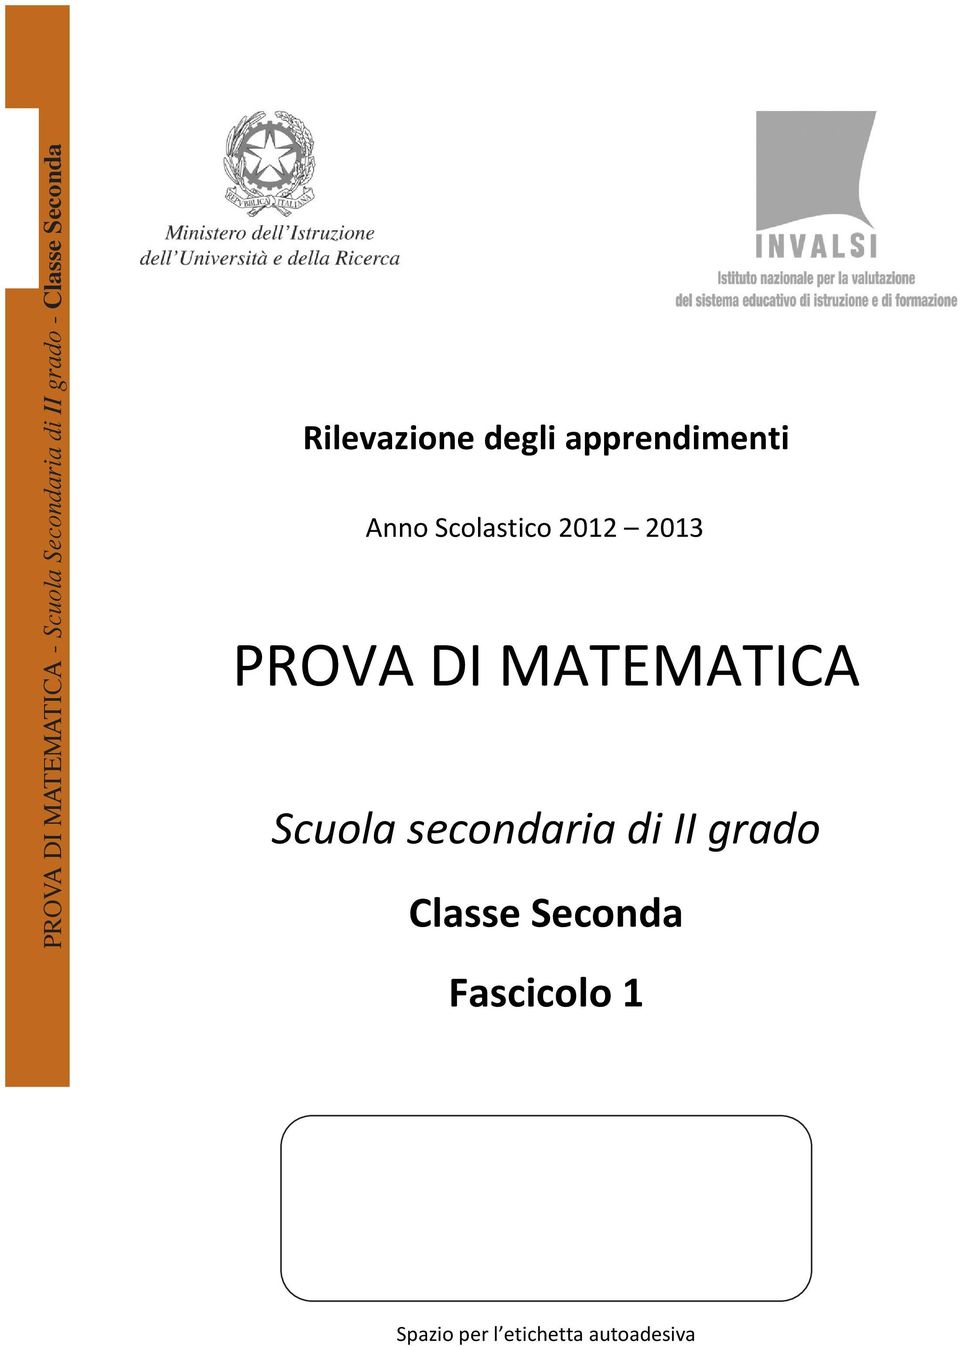 Scolastico 2012 2013 PROVA DI MATEMATICA Scuola secondaria